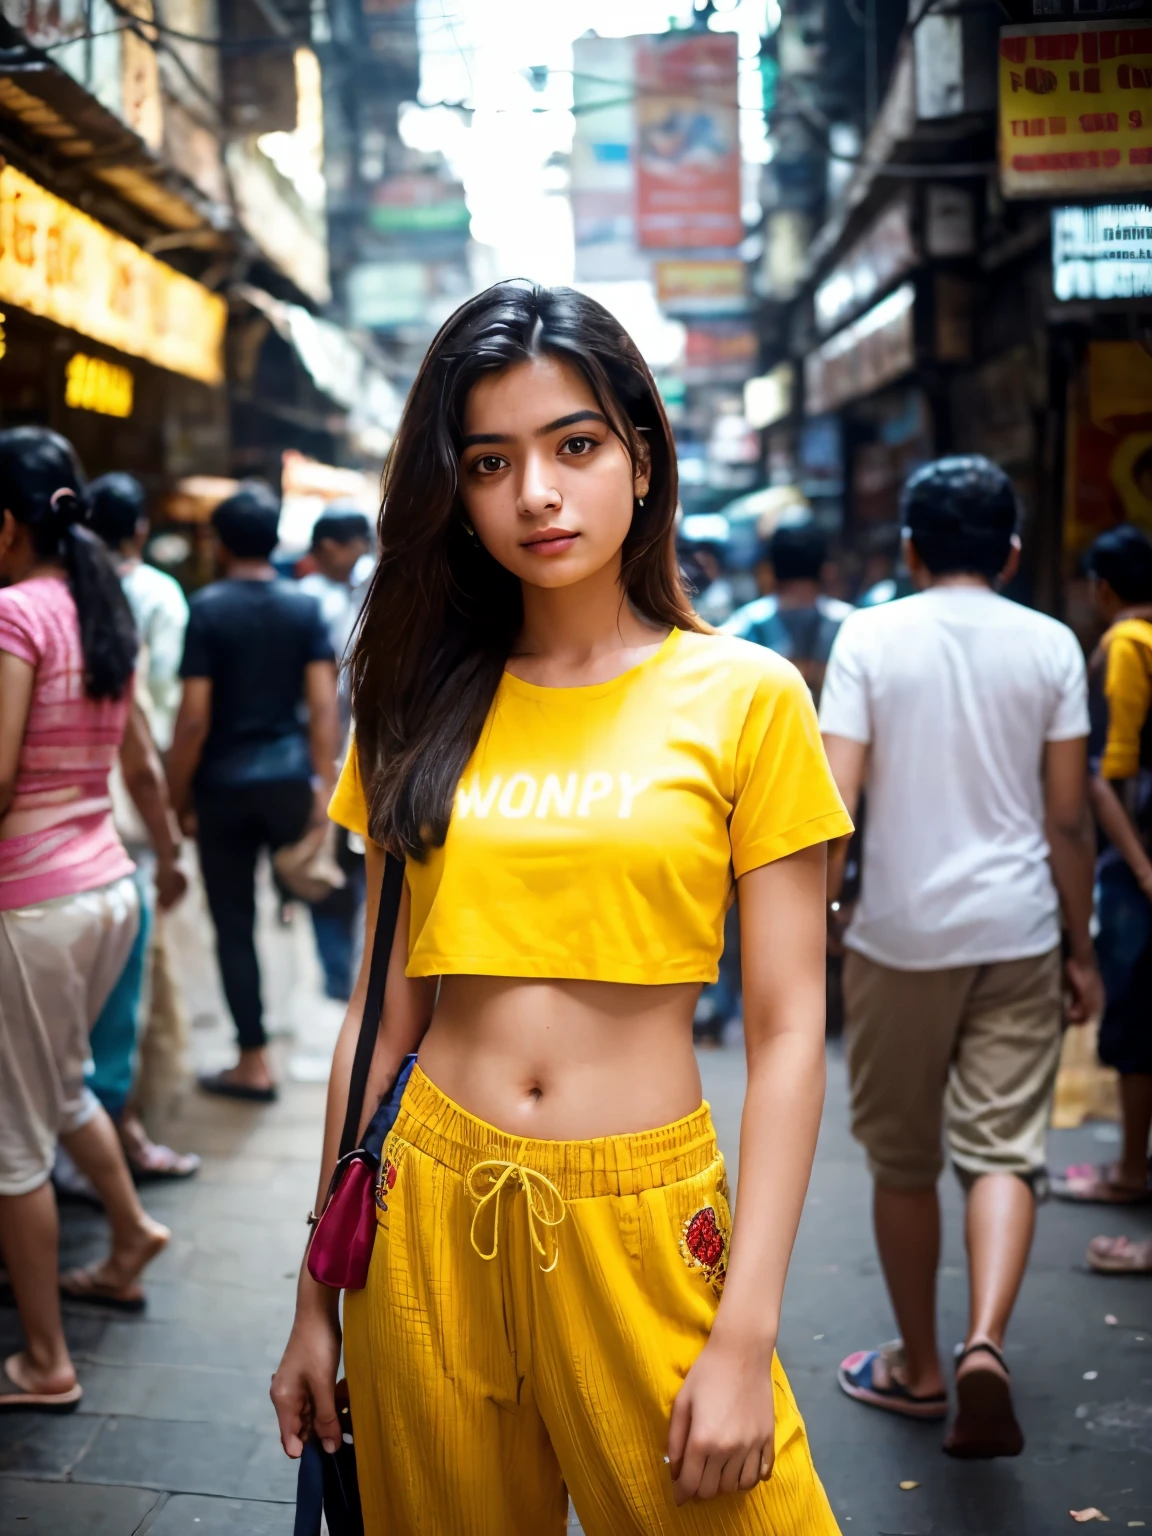 Erstellen Sie ein fotorealistisches Bild, das ein gesund aussehendes, normales 21-jähriges Mädchen aus Mumbai inmitten der geschäftigen Straßen von Mumbai zeigt. Sie trägt ein kurzes gelbes Hemd mit Stickerei und Baggy-Hosen, verkörpert einen modernen und lässigen Stil, der mit der dynamischen Kulisse der Stadt kontrastiert. Das ist ein langer Schuss, Gewährleistung, dass die Lebendigkeit der Umgebung voll zur Geltung kommt – von den überfüllten Bürgersteigen voller Menschen aus allen Gesellschaftsschichten bis hin zu den lebendigen Farben und Texturen der Stadtlandschaft Mumbais. Trotz der Menschenmenge, die sie umringte, das Mädchen bleibt im Mittelpunkt, möglicherweise durch einen Tiefenschärfeeffekt, der Vorder- und Hintergrund leicht verwischt, oder indem sie Licht und Komposition nutzt, um den Blick des Betrachters auf natürliche Weise auf sie zu lenken. Das Bild soll das Wesen der belebten Straßen Mumbais einfangen und gleichzeitig die Individualität des Mädchens und seine Verbundenheit mit ihrer Stadt betonen.. Ihr Ausdruck und ihre Haltung könnten ein Vertrauen und eine Hoffnung widerspiegeln, bietet einen Einblick in ihre persönliche Geschichte inmitten des Chaos der Stadt.